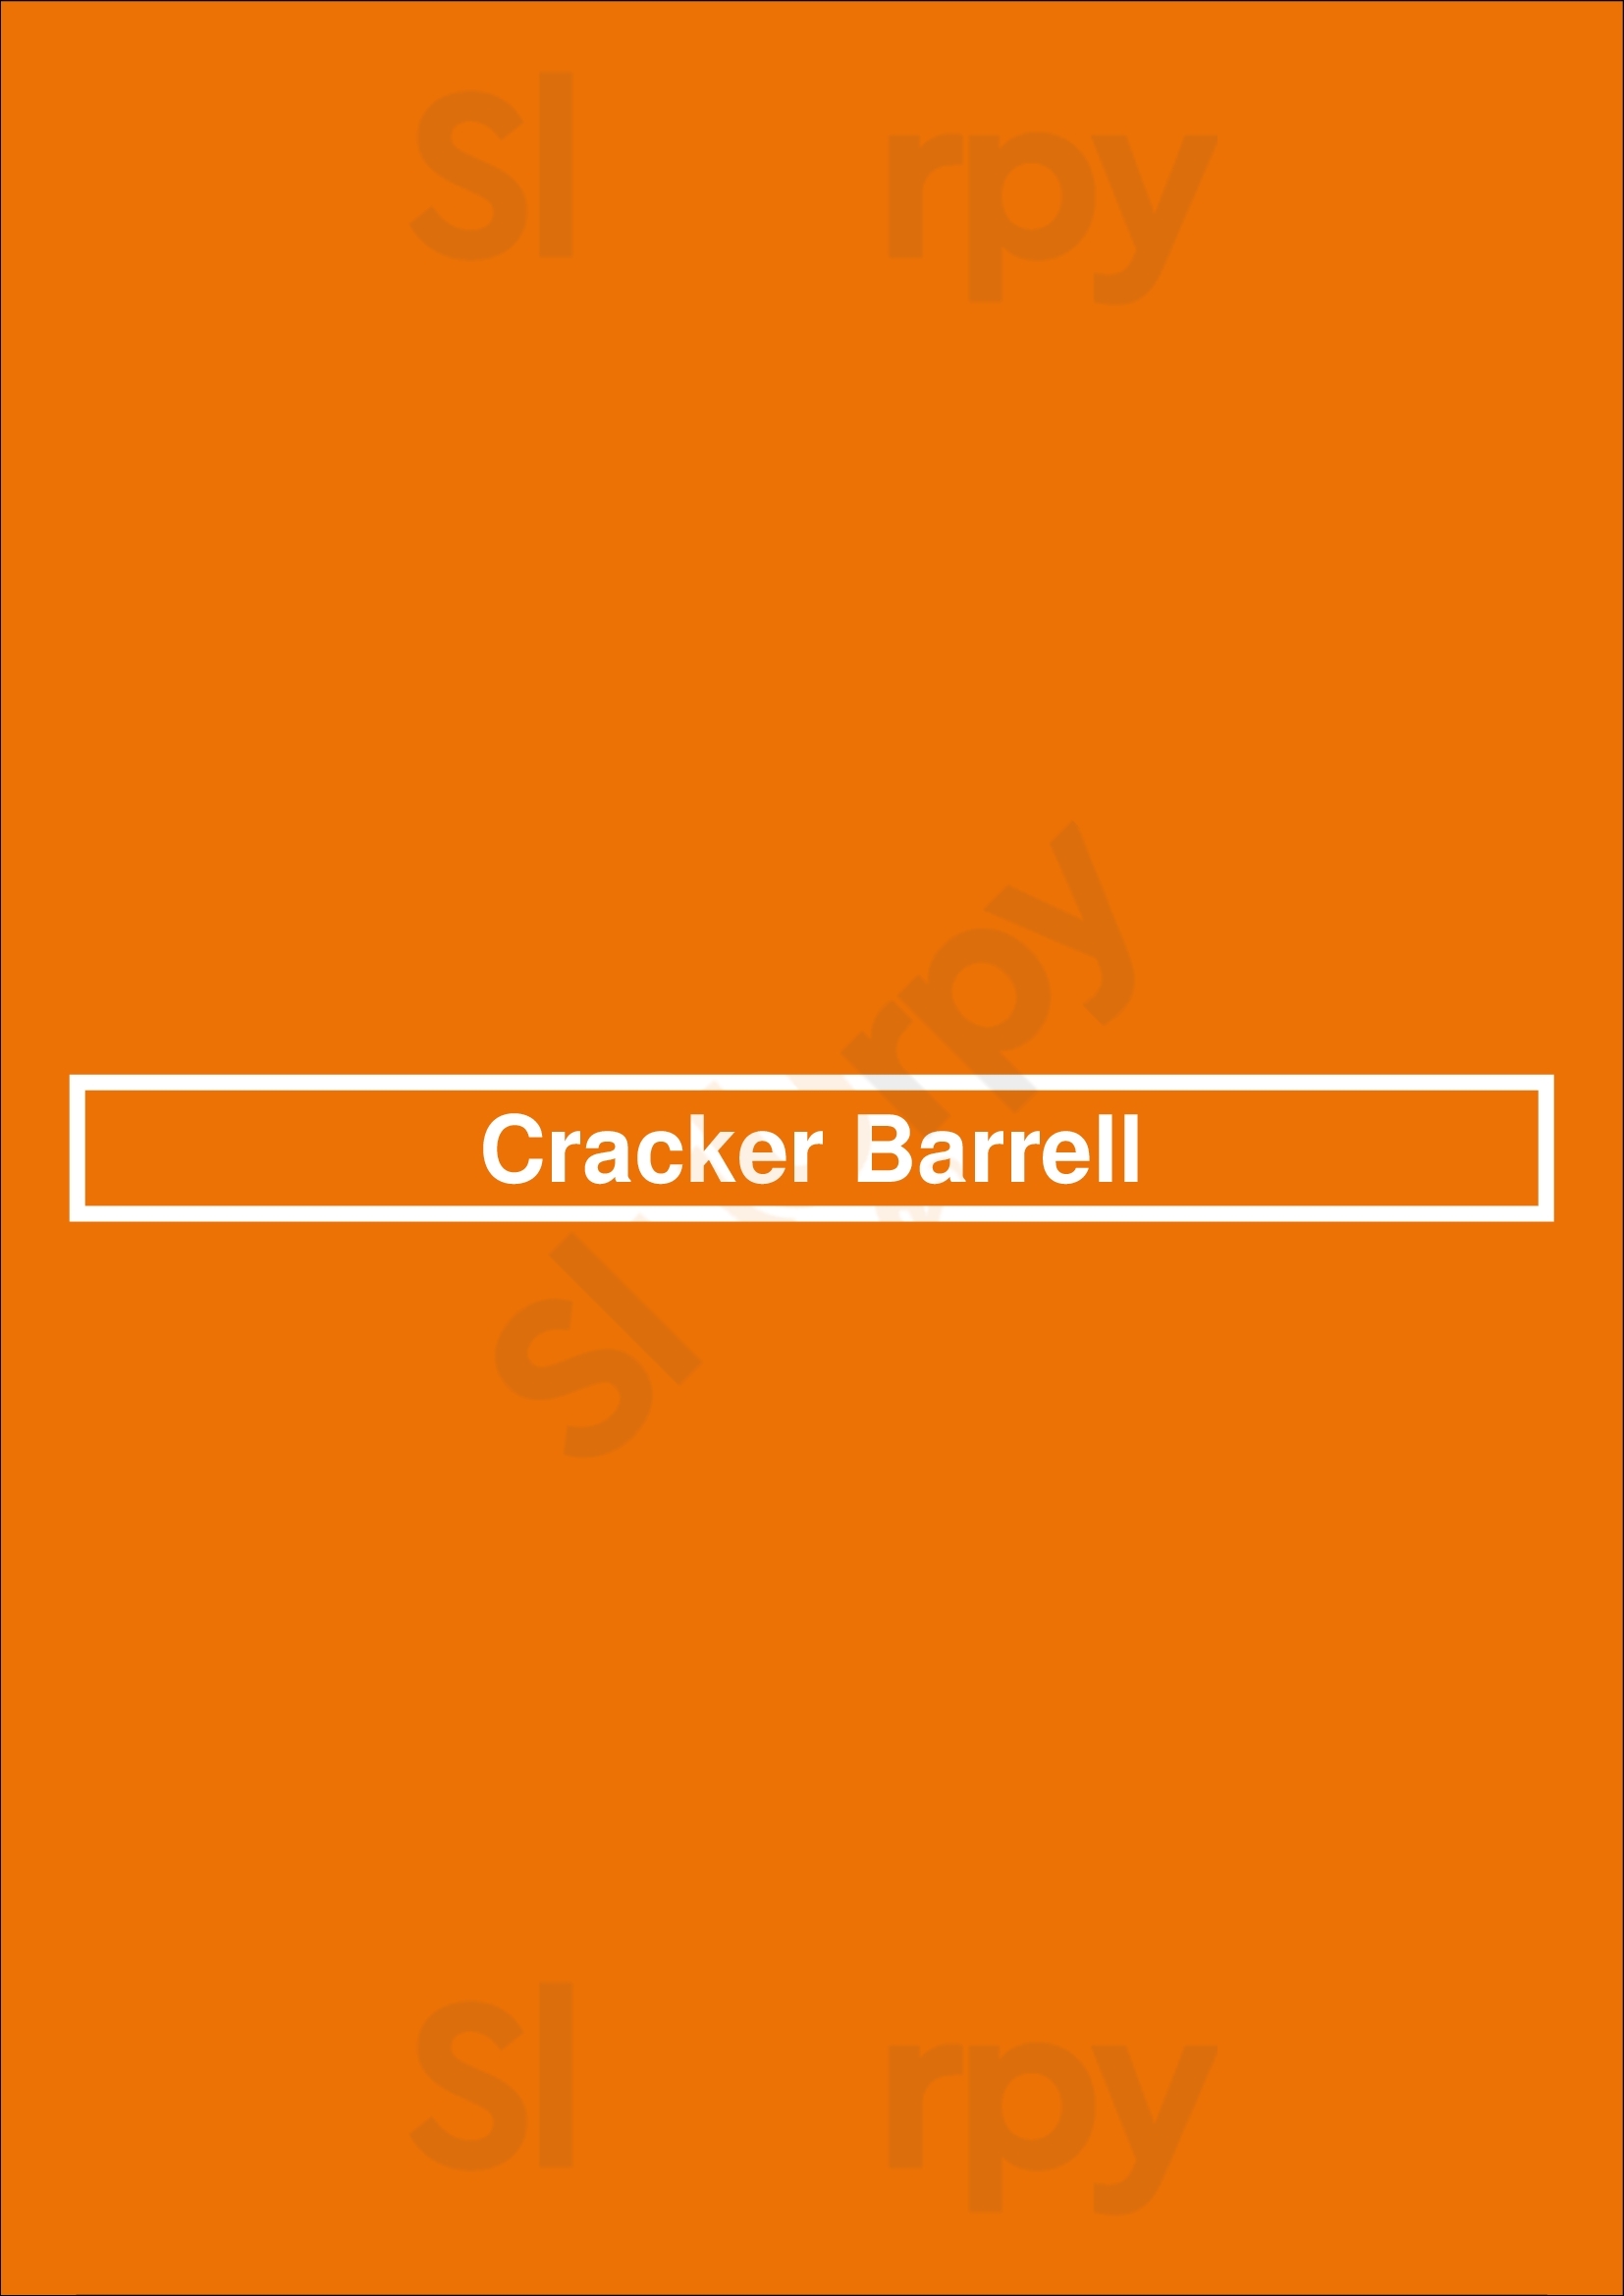 Cracker Barrell Georgetown Menu - 1